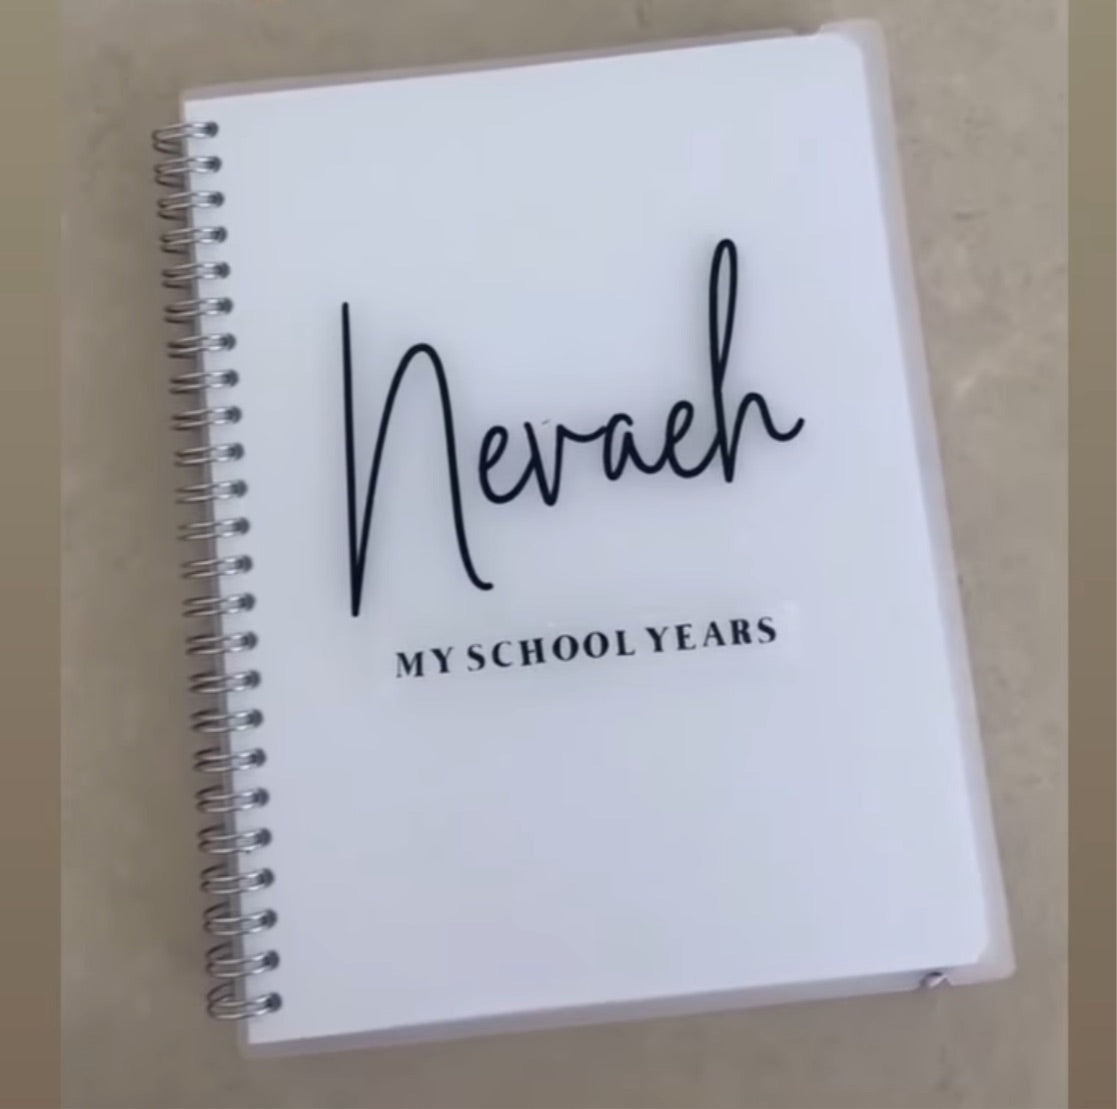 The Wilson's School book design